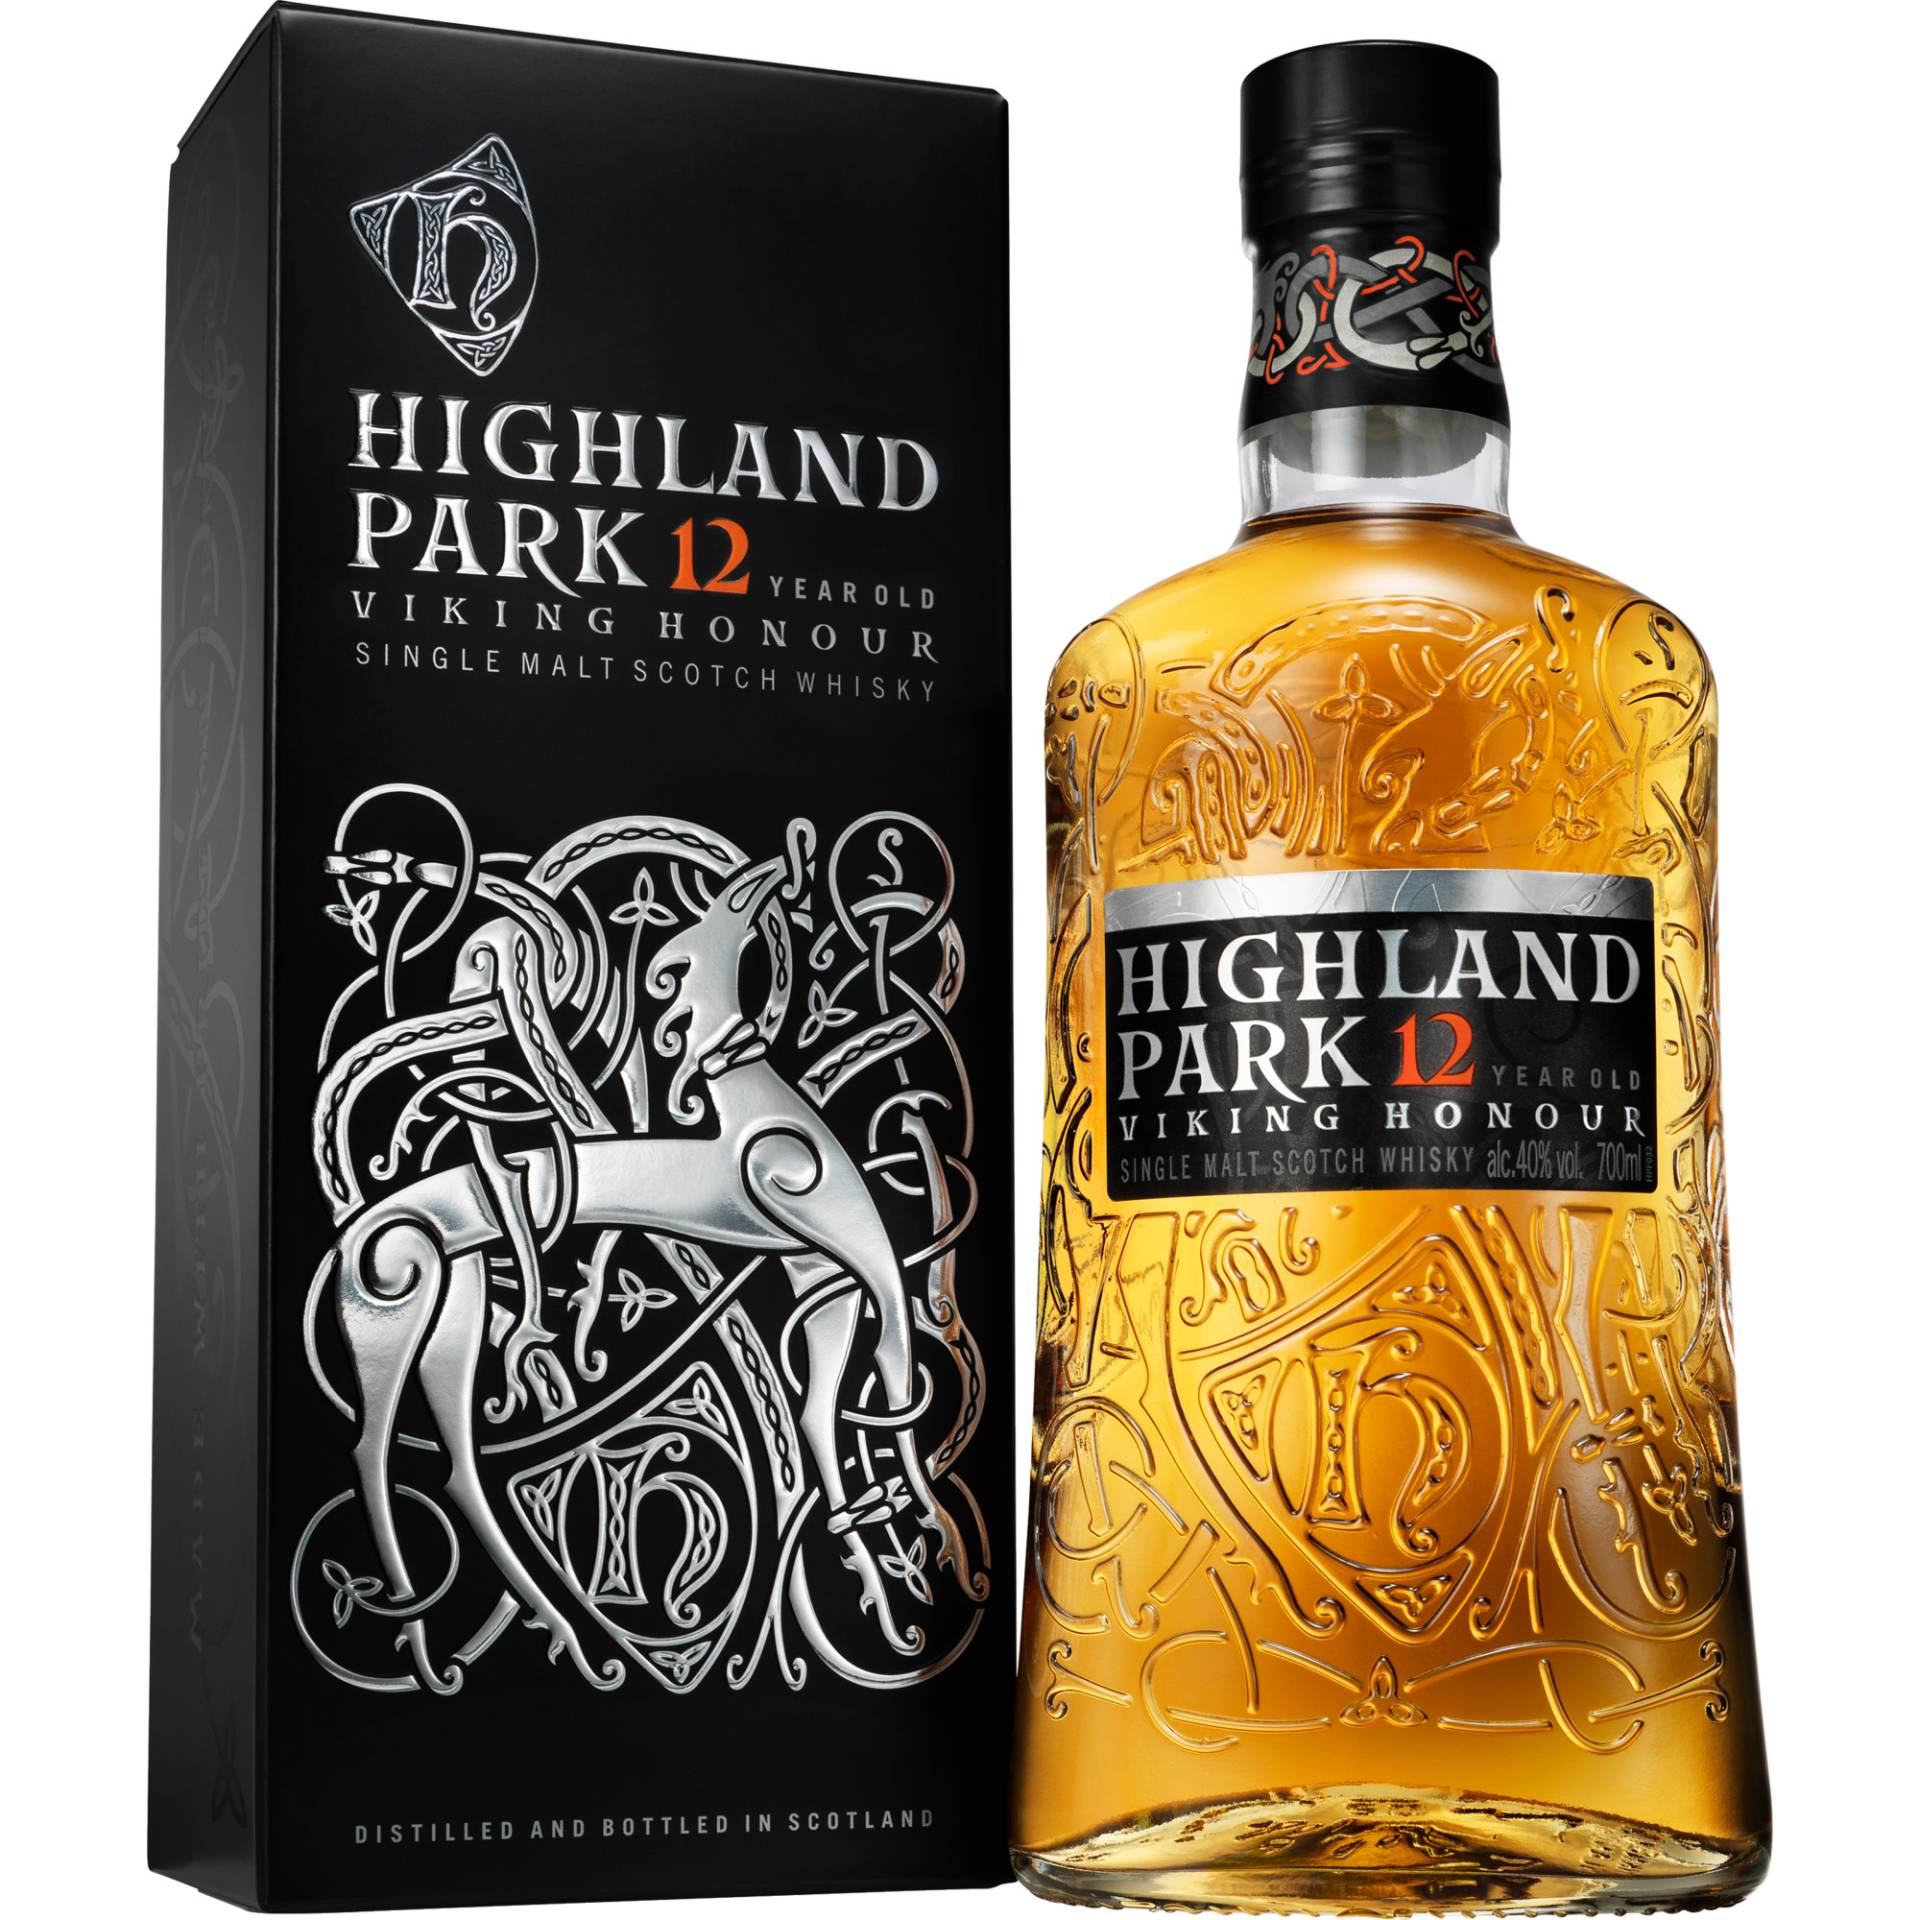 Highland Park 12 Years Single Malt Scotch Whisky, 0,7 L, 40% Vol., Schottland, Spirituosen von The Edrington Group, 2500 Great Western Roas, Glasgow, G15 6RW, Scotland